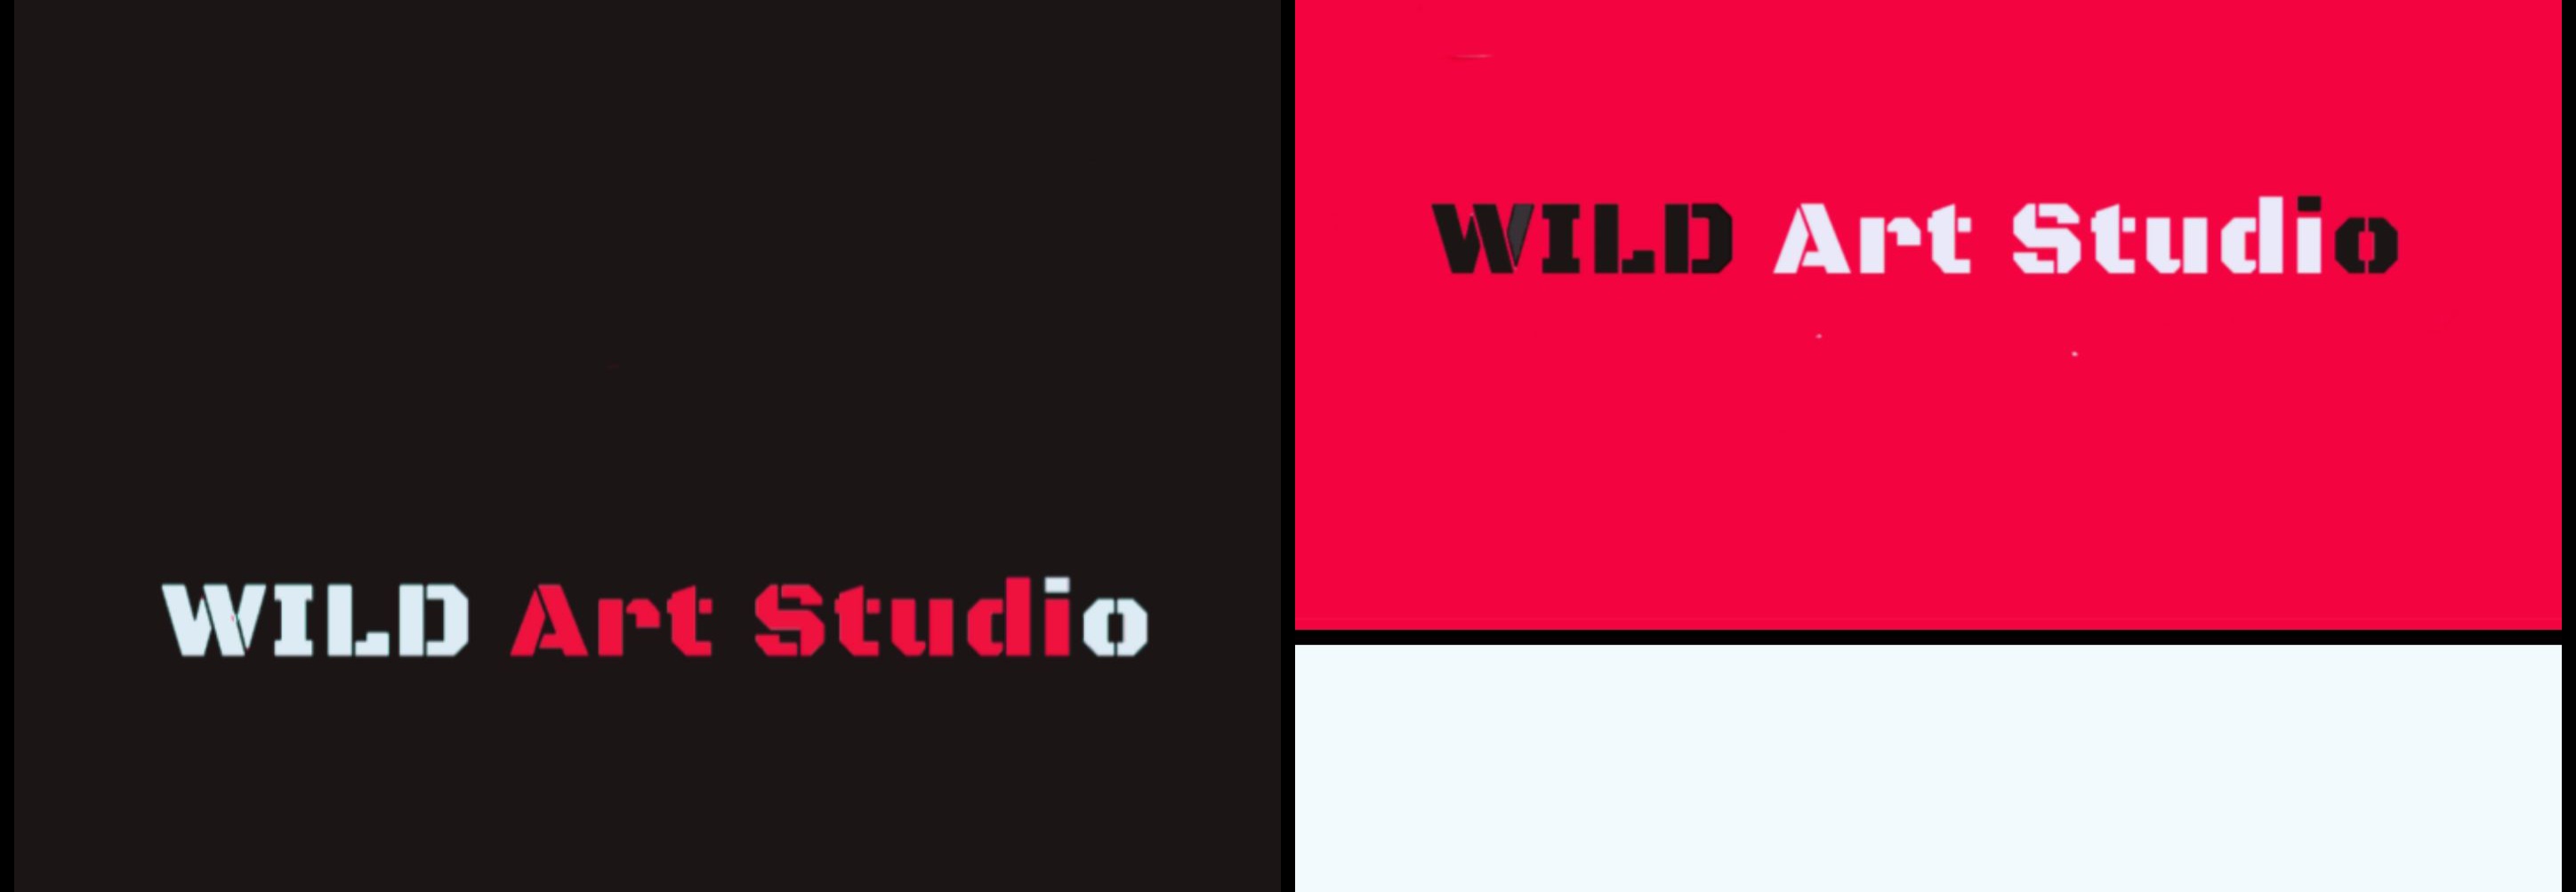 WILD_ART_STUDIO banner